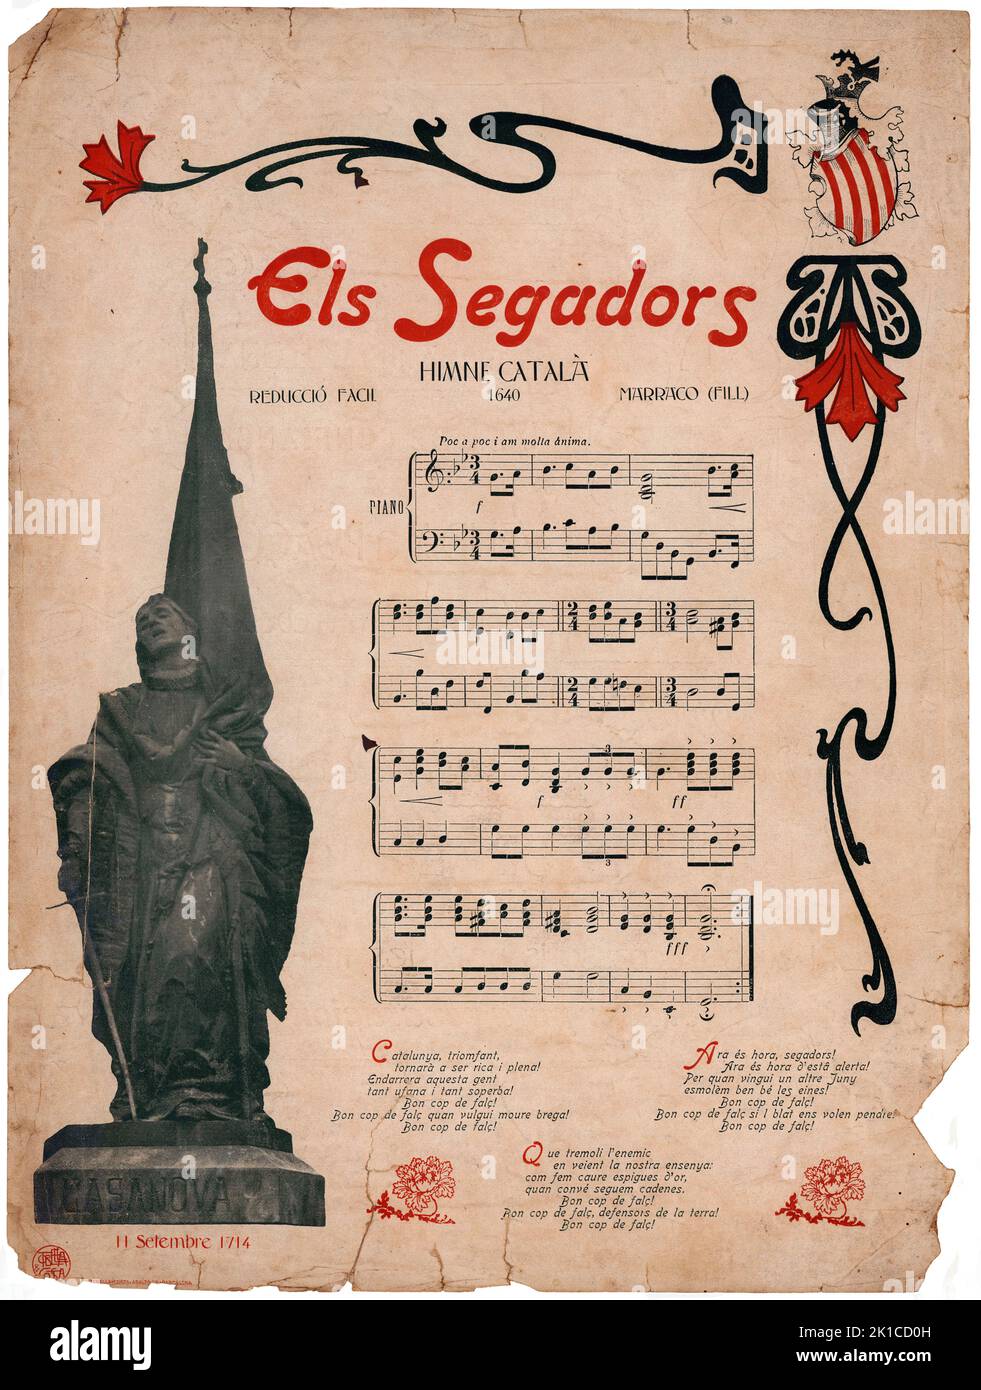 Partitura Musical del himno catalán Els Segadors, de Marraco (hijos). Años 1910. Stockfoto